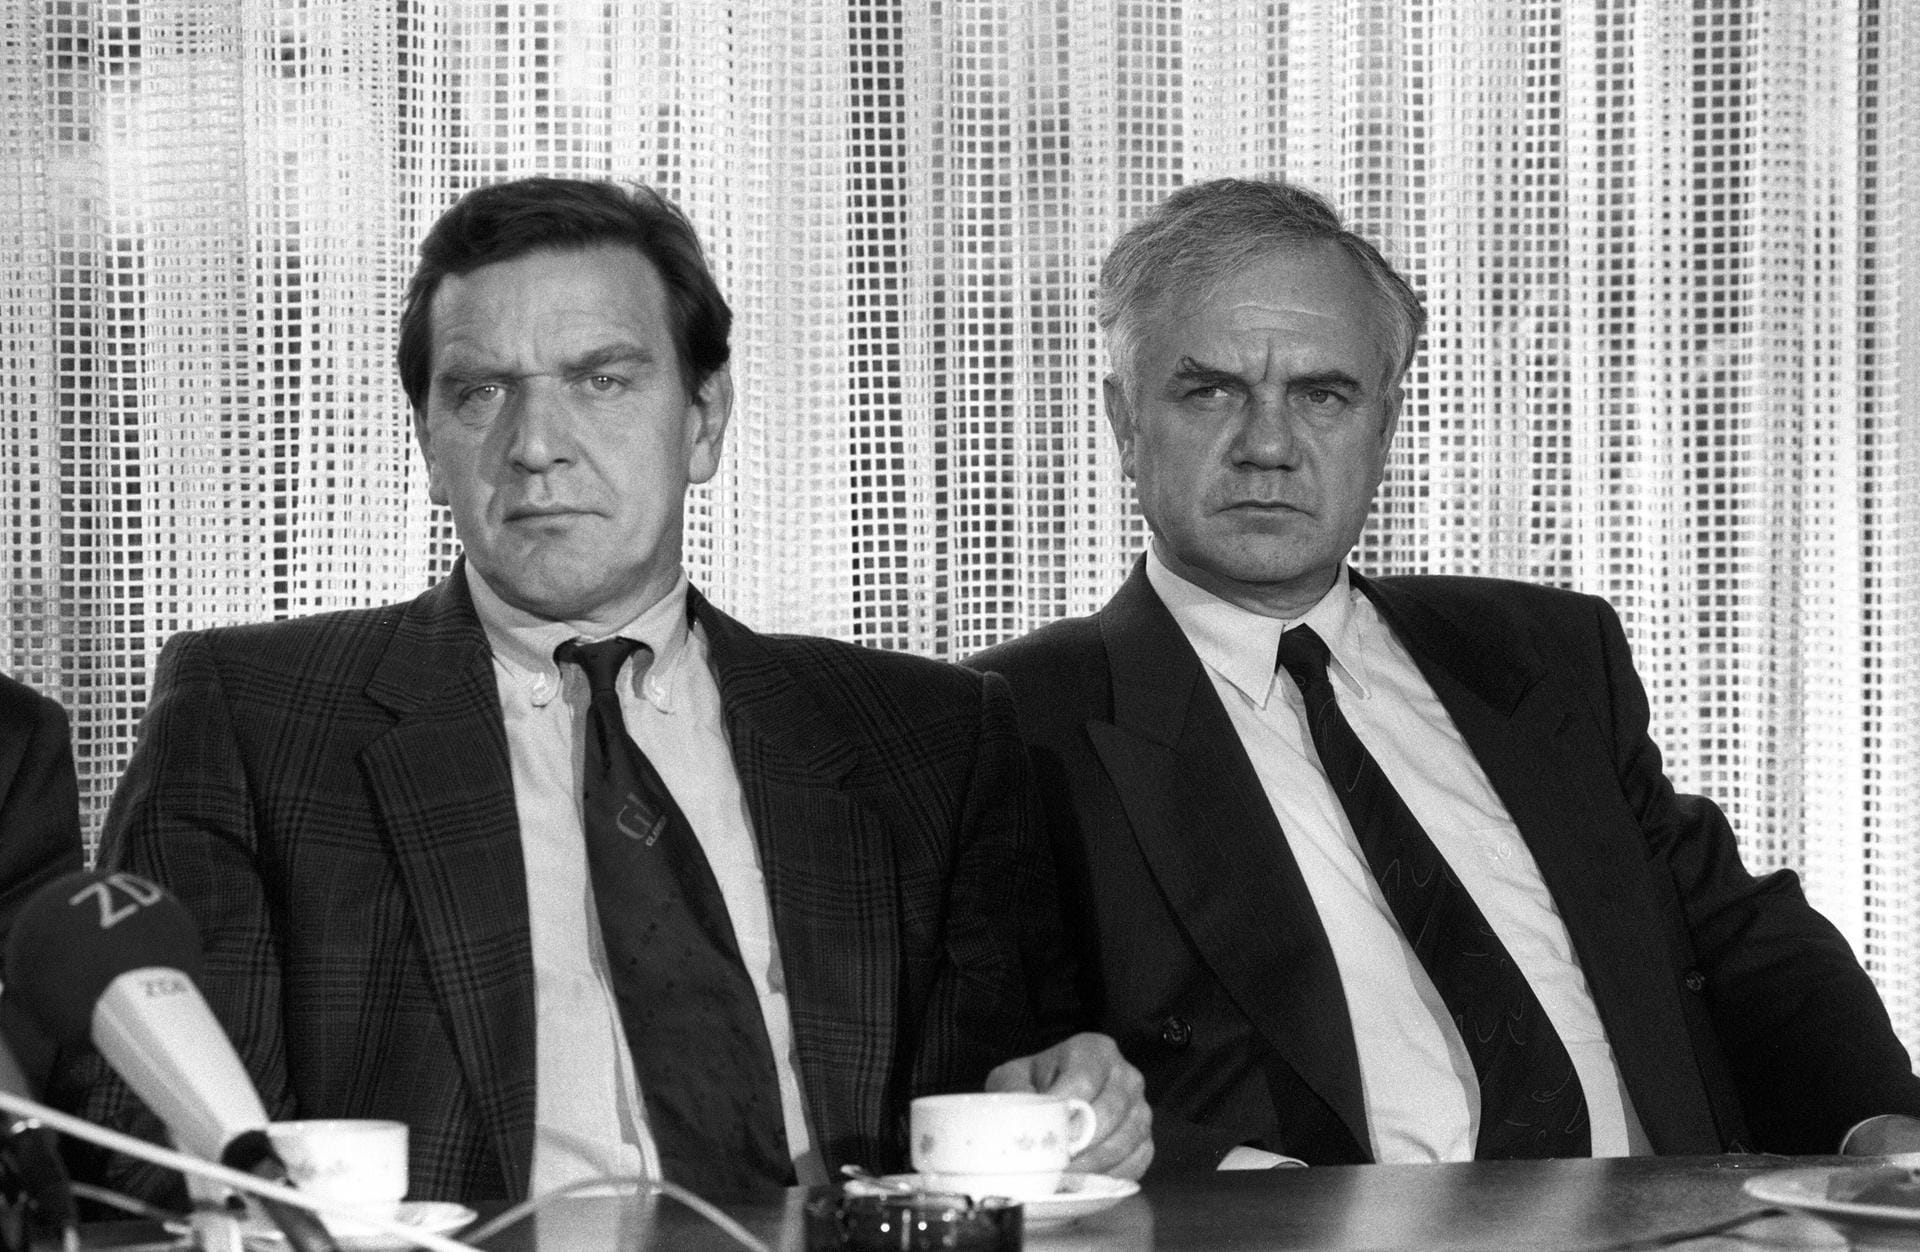 Manfred Stolpe (r.) mit Parteifreund Gerhard Schröder am 21. November 1990: Drei Wochen zuvor wurde Stolpe zum Ministerpräsident von Brandenburg gewählt.